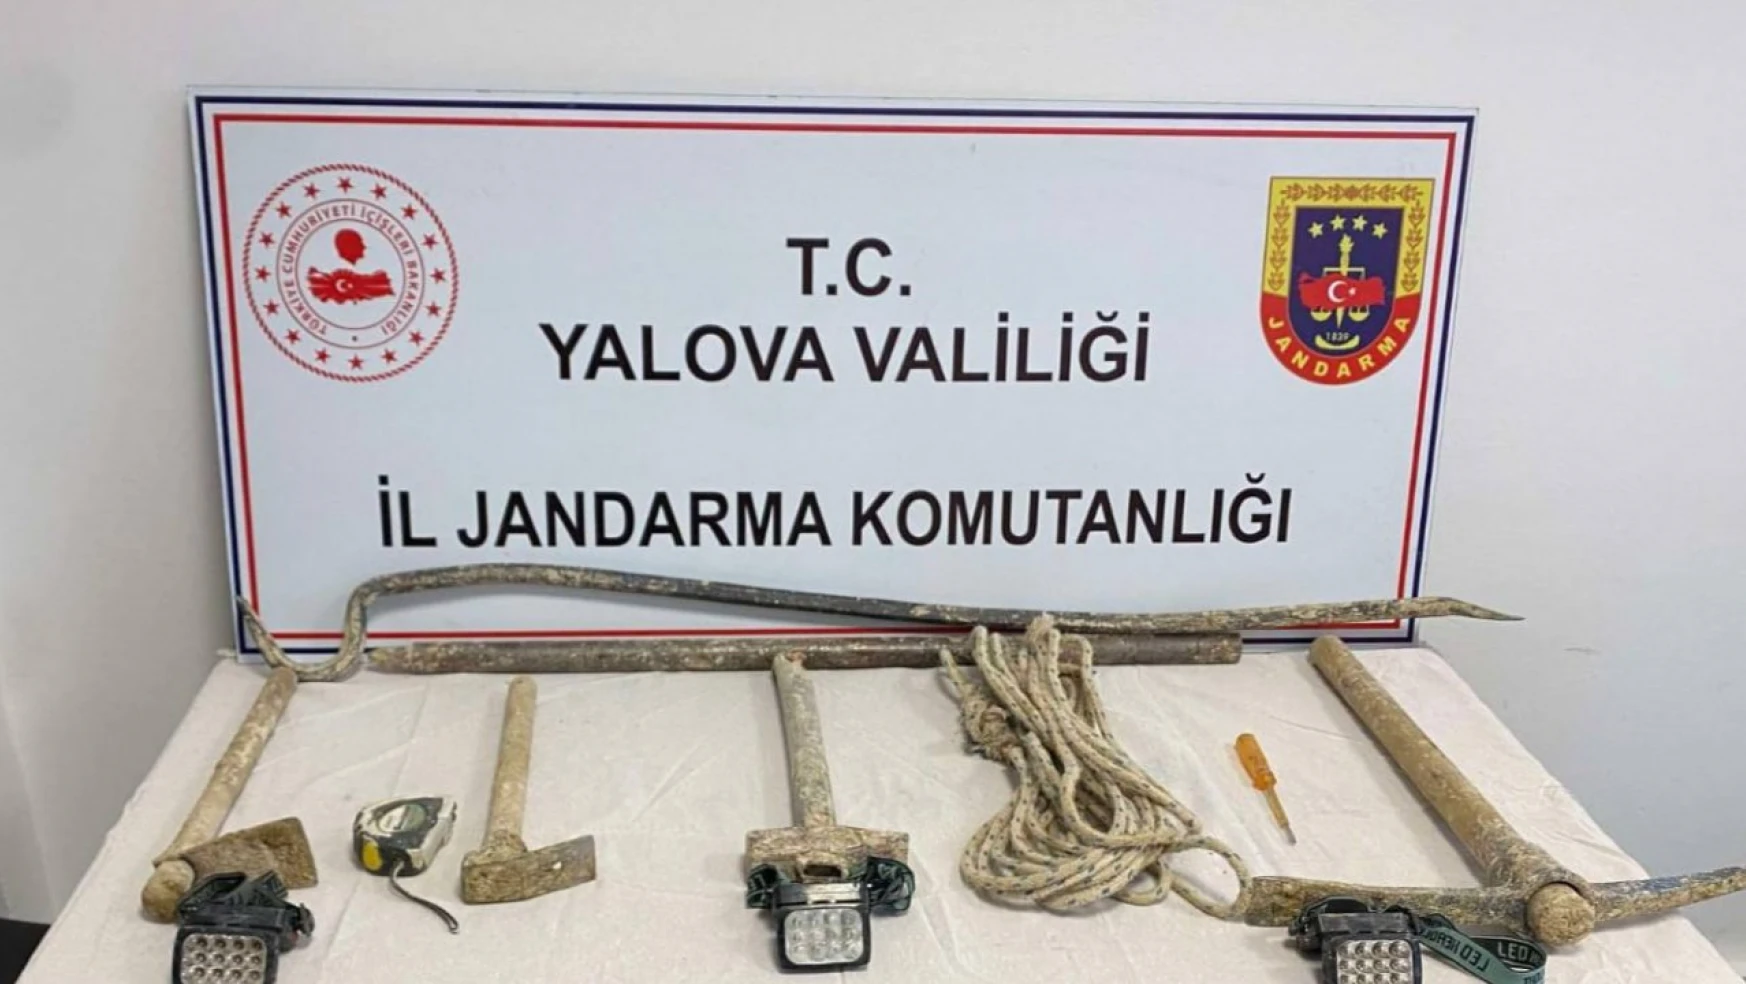 Yalova'da kaçak kazı yapan 4 kişi gözaltına alındı